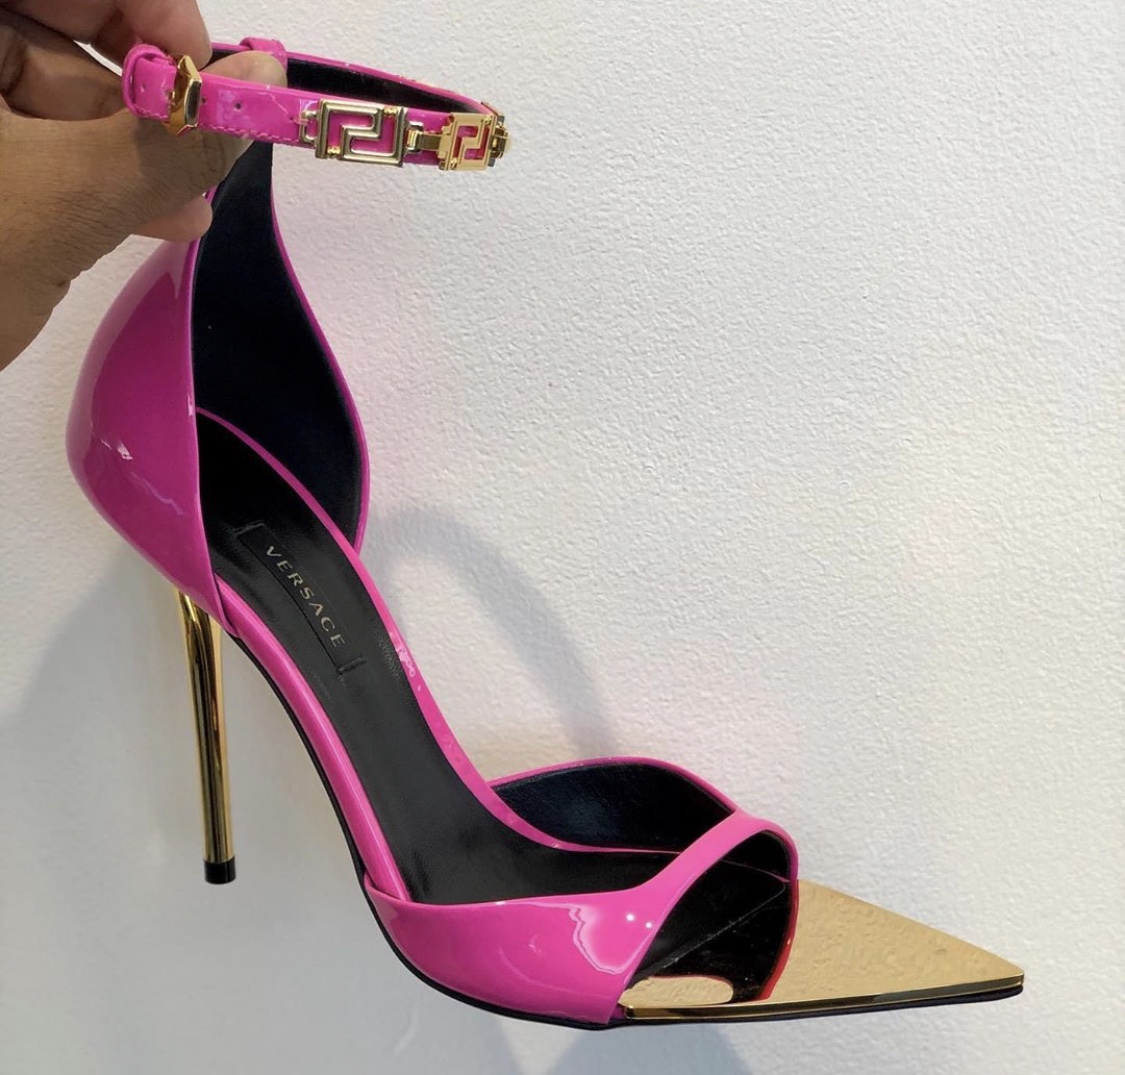 Buy > pink versace heels > in stock